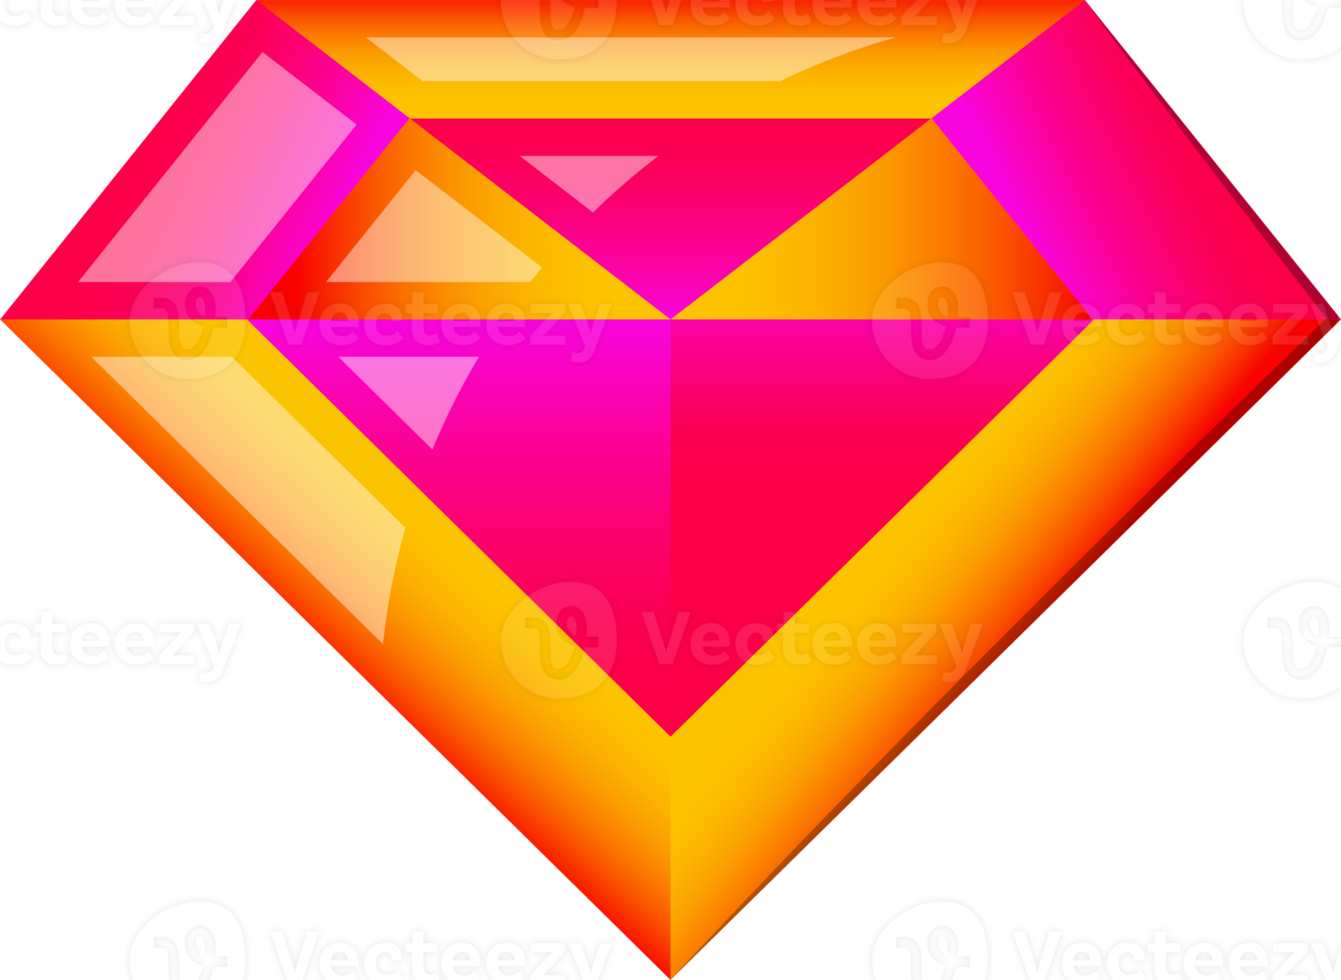 abstract diamant logo illustratie in modieus en minimaal stijl png